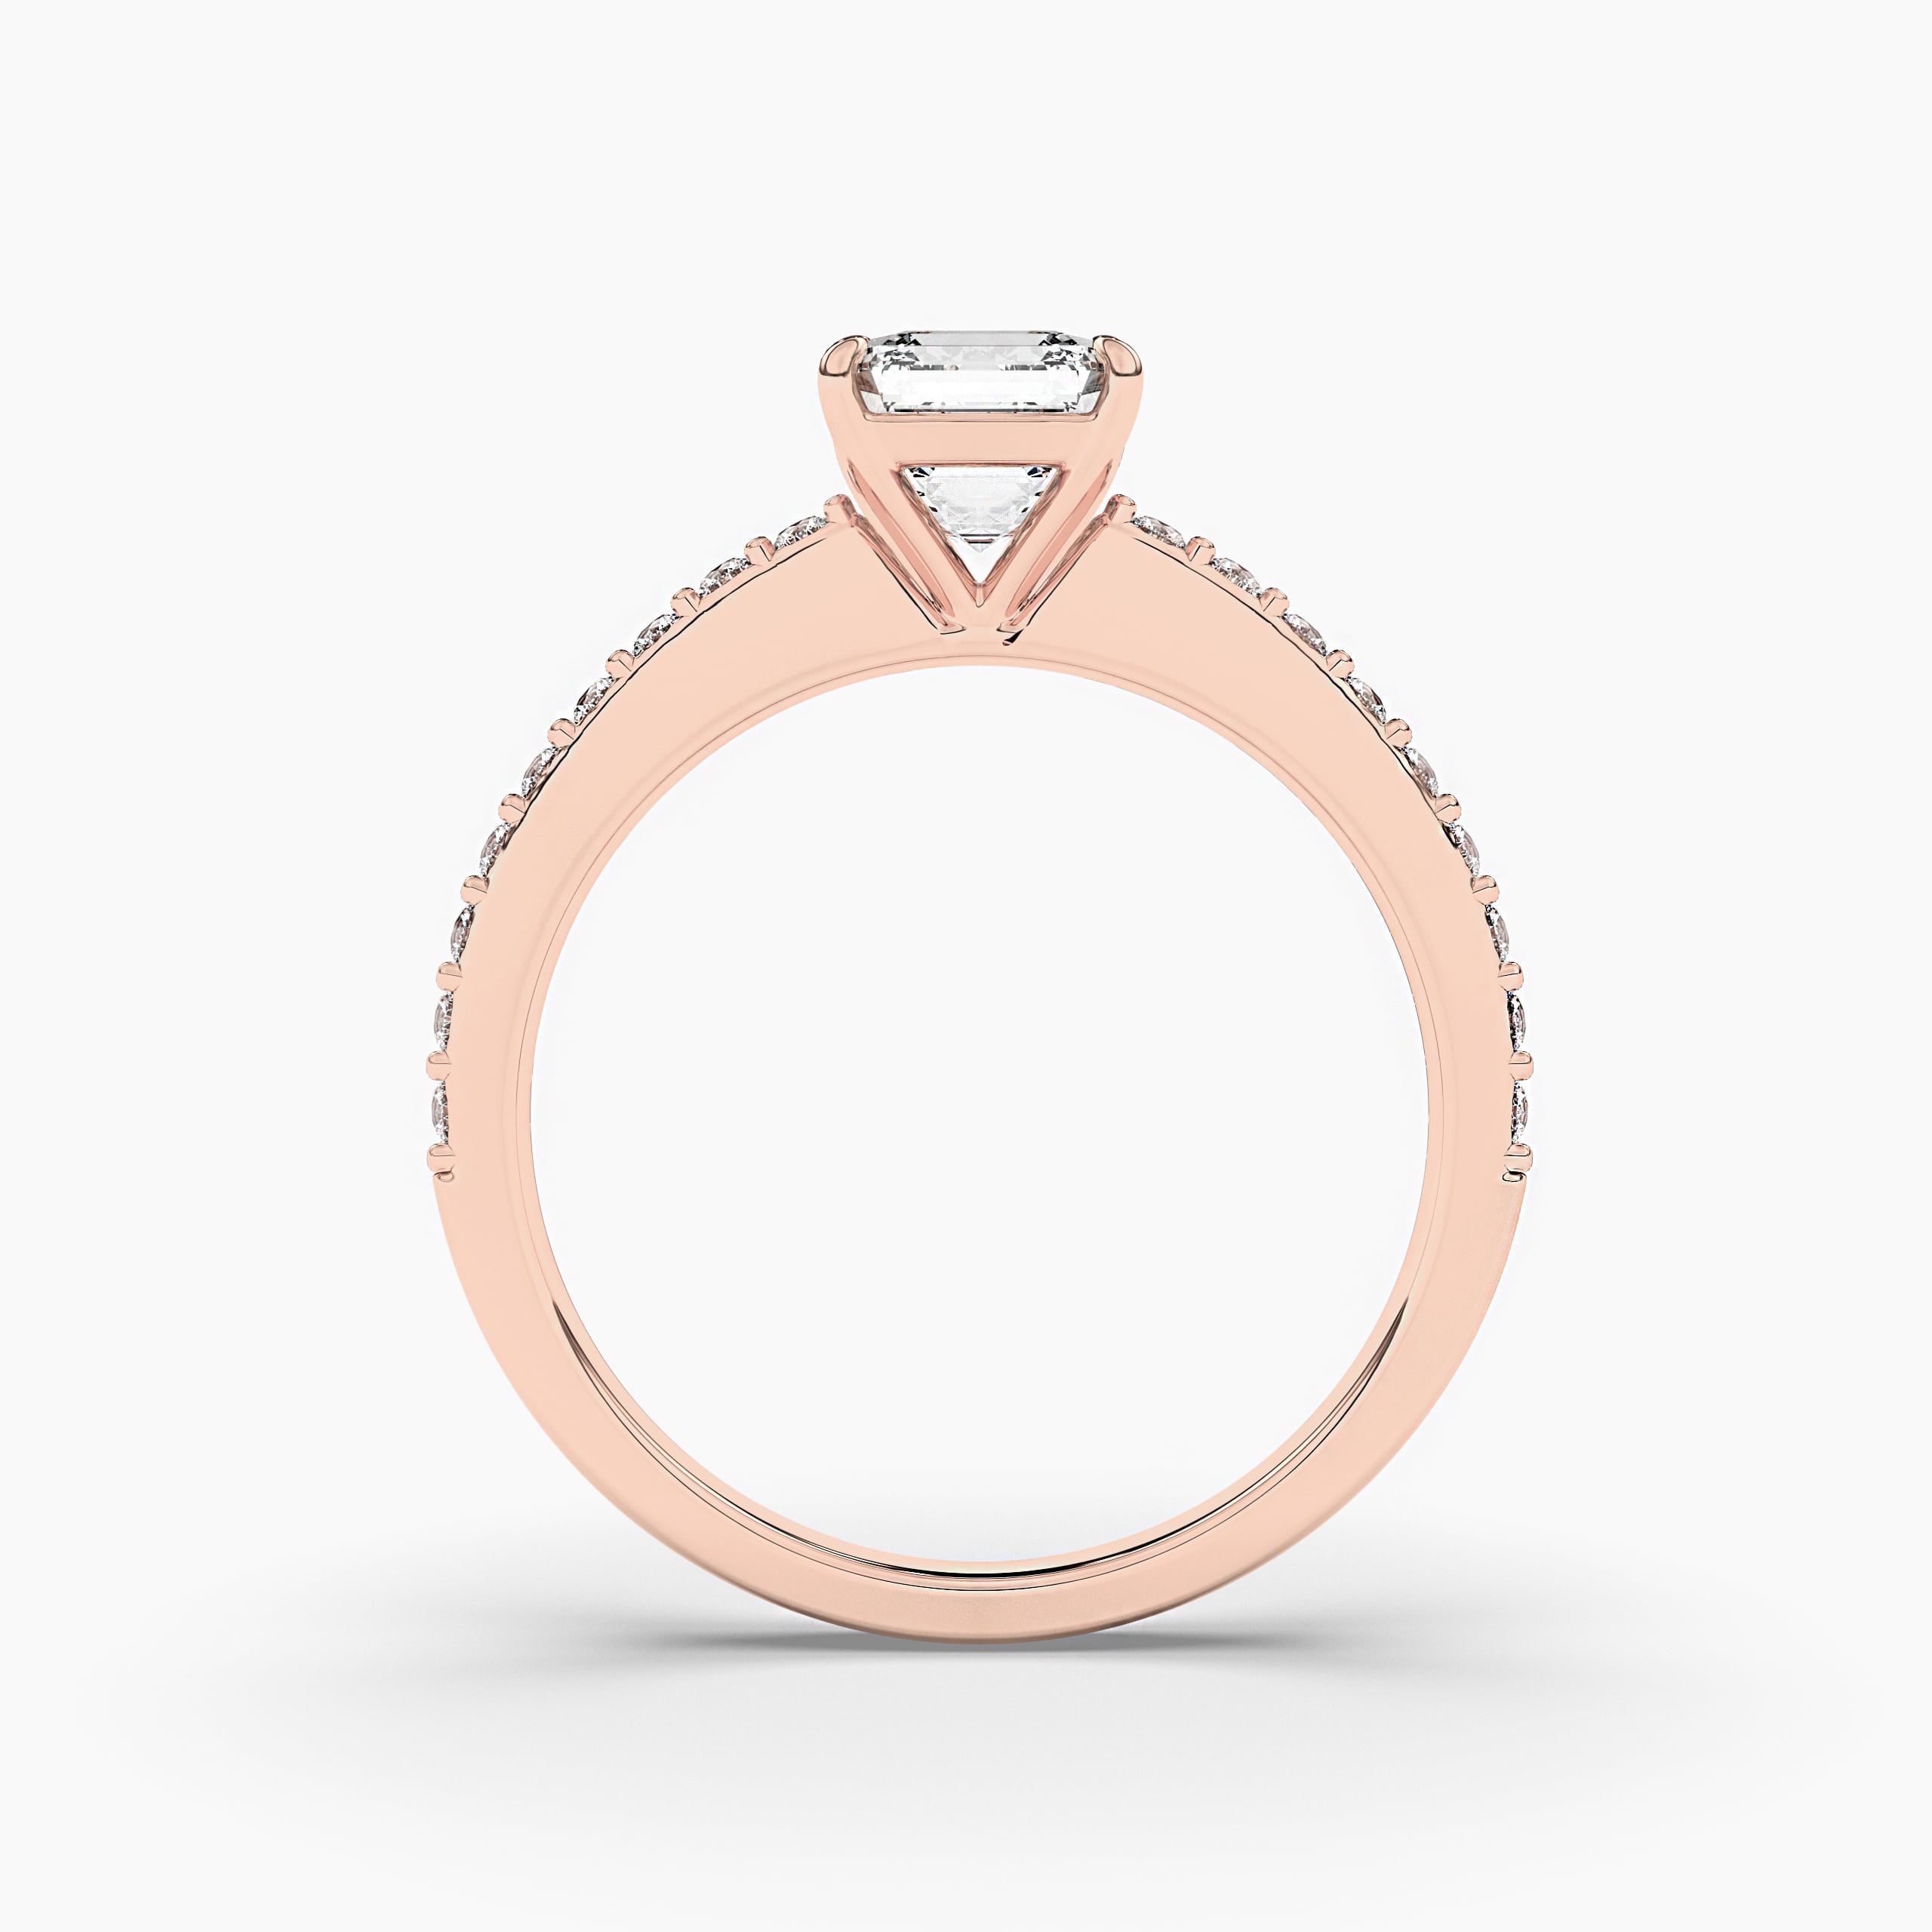 Asscher Cut diamond engagement ring 